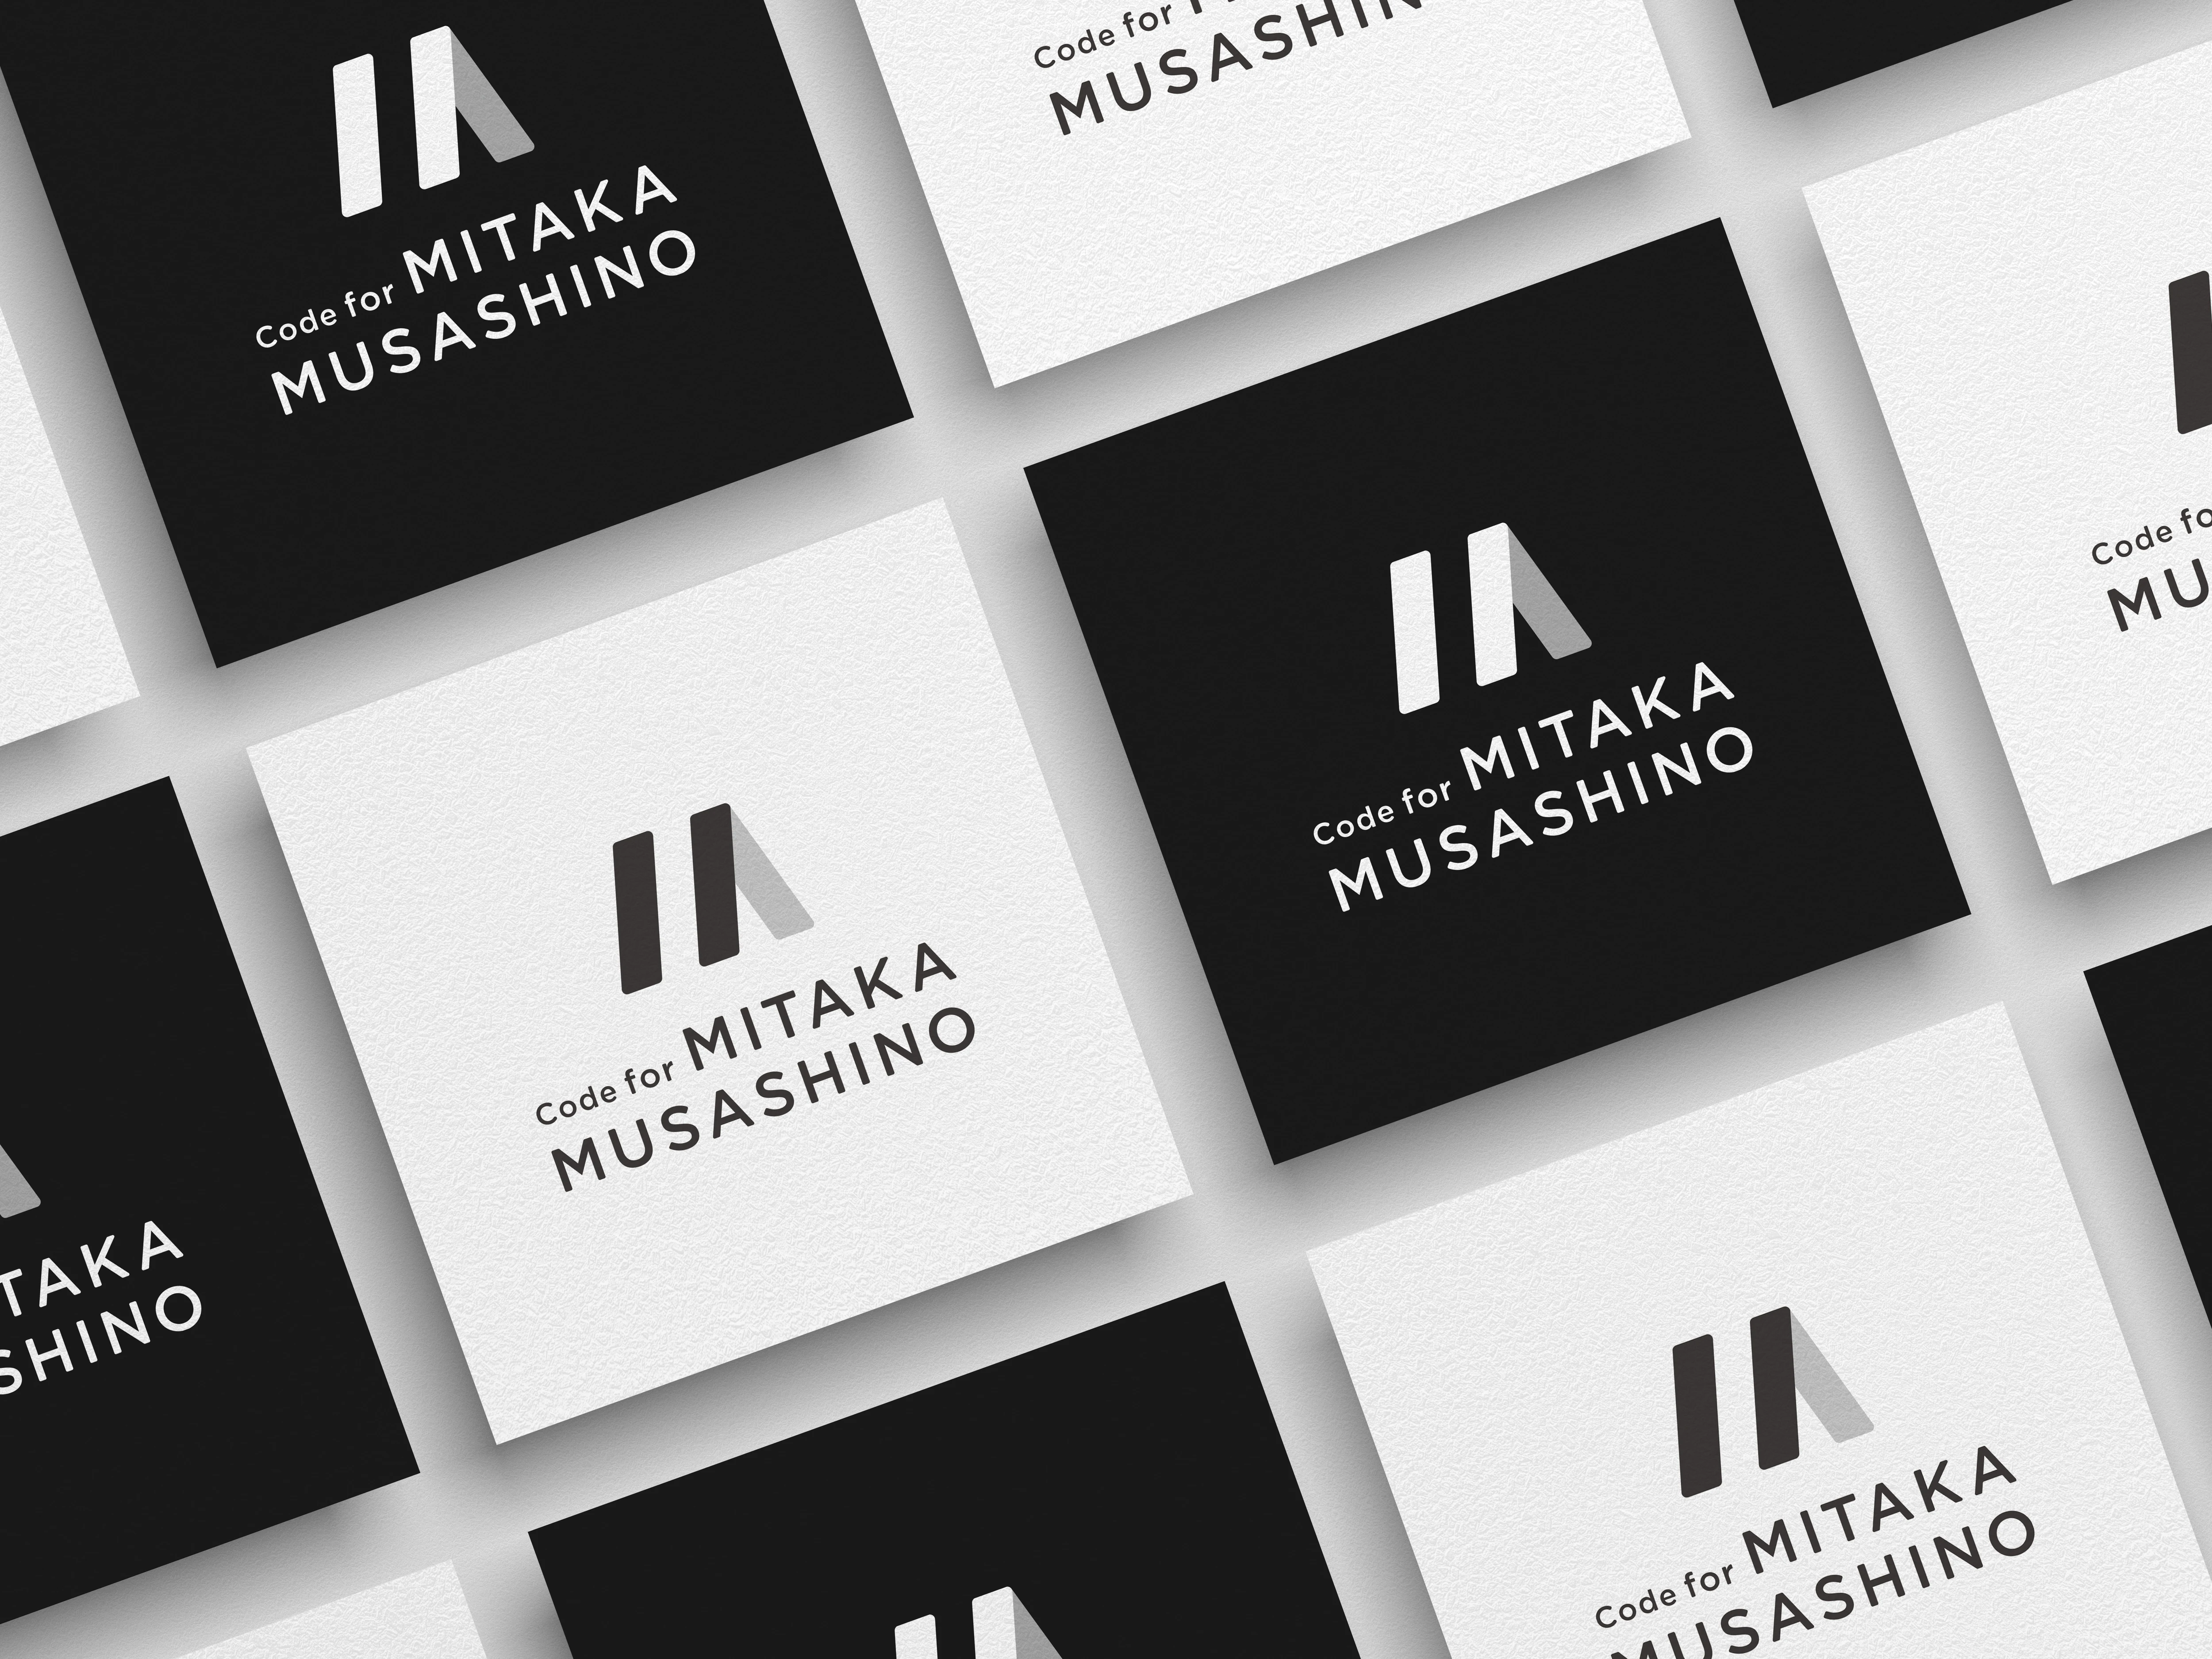 Code for MITAKA MUSASHINO